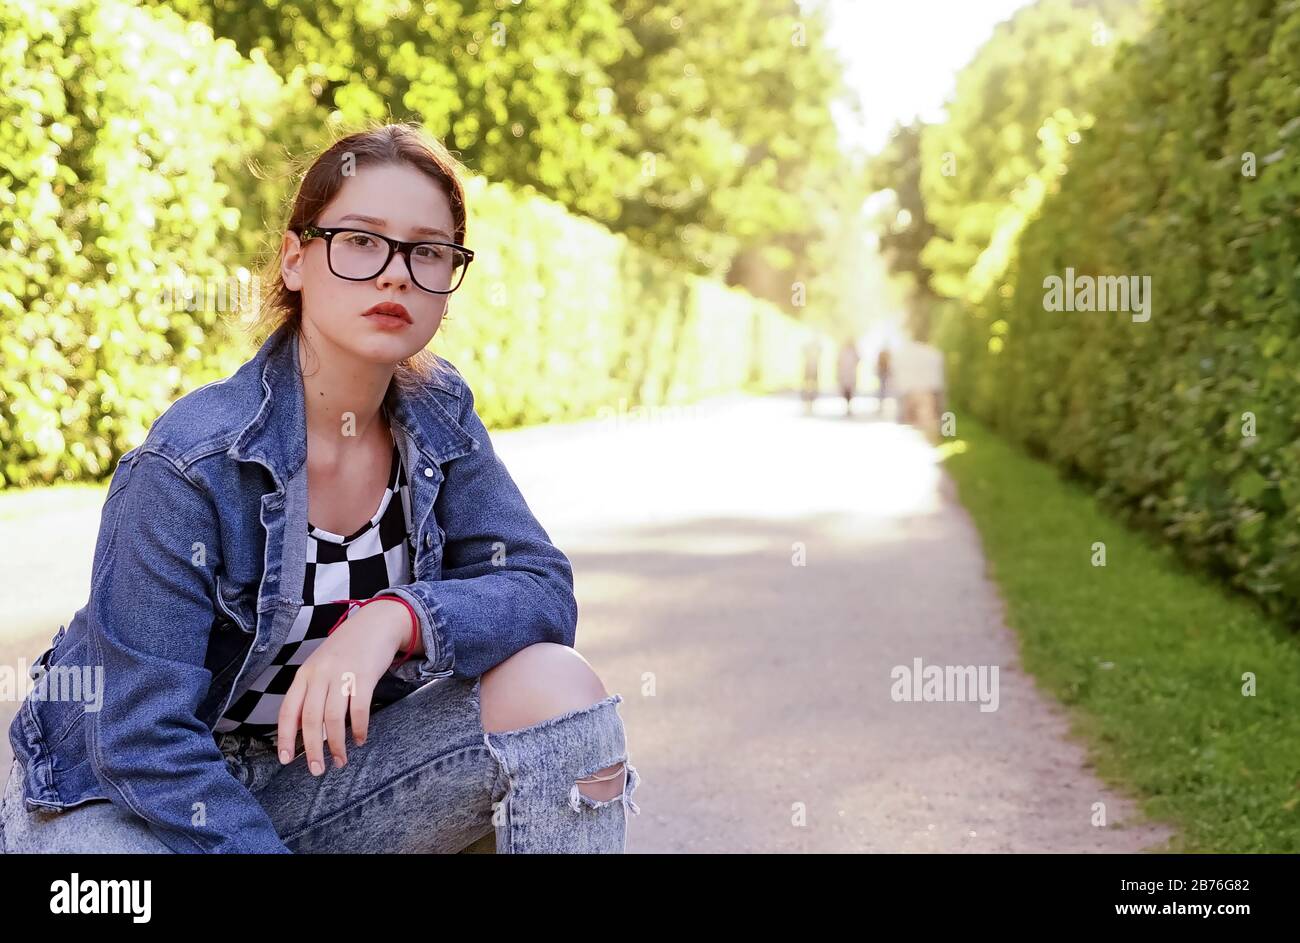 Ein junges Mädchen mit Brille in einem Park auf einer grünen Gasse Stockfoto